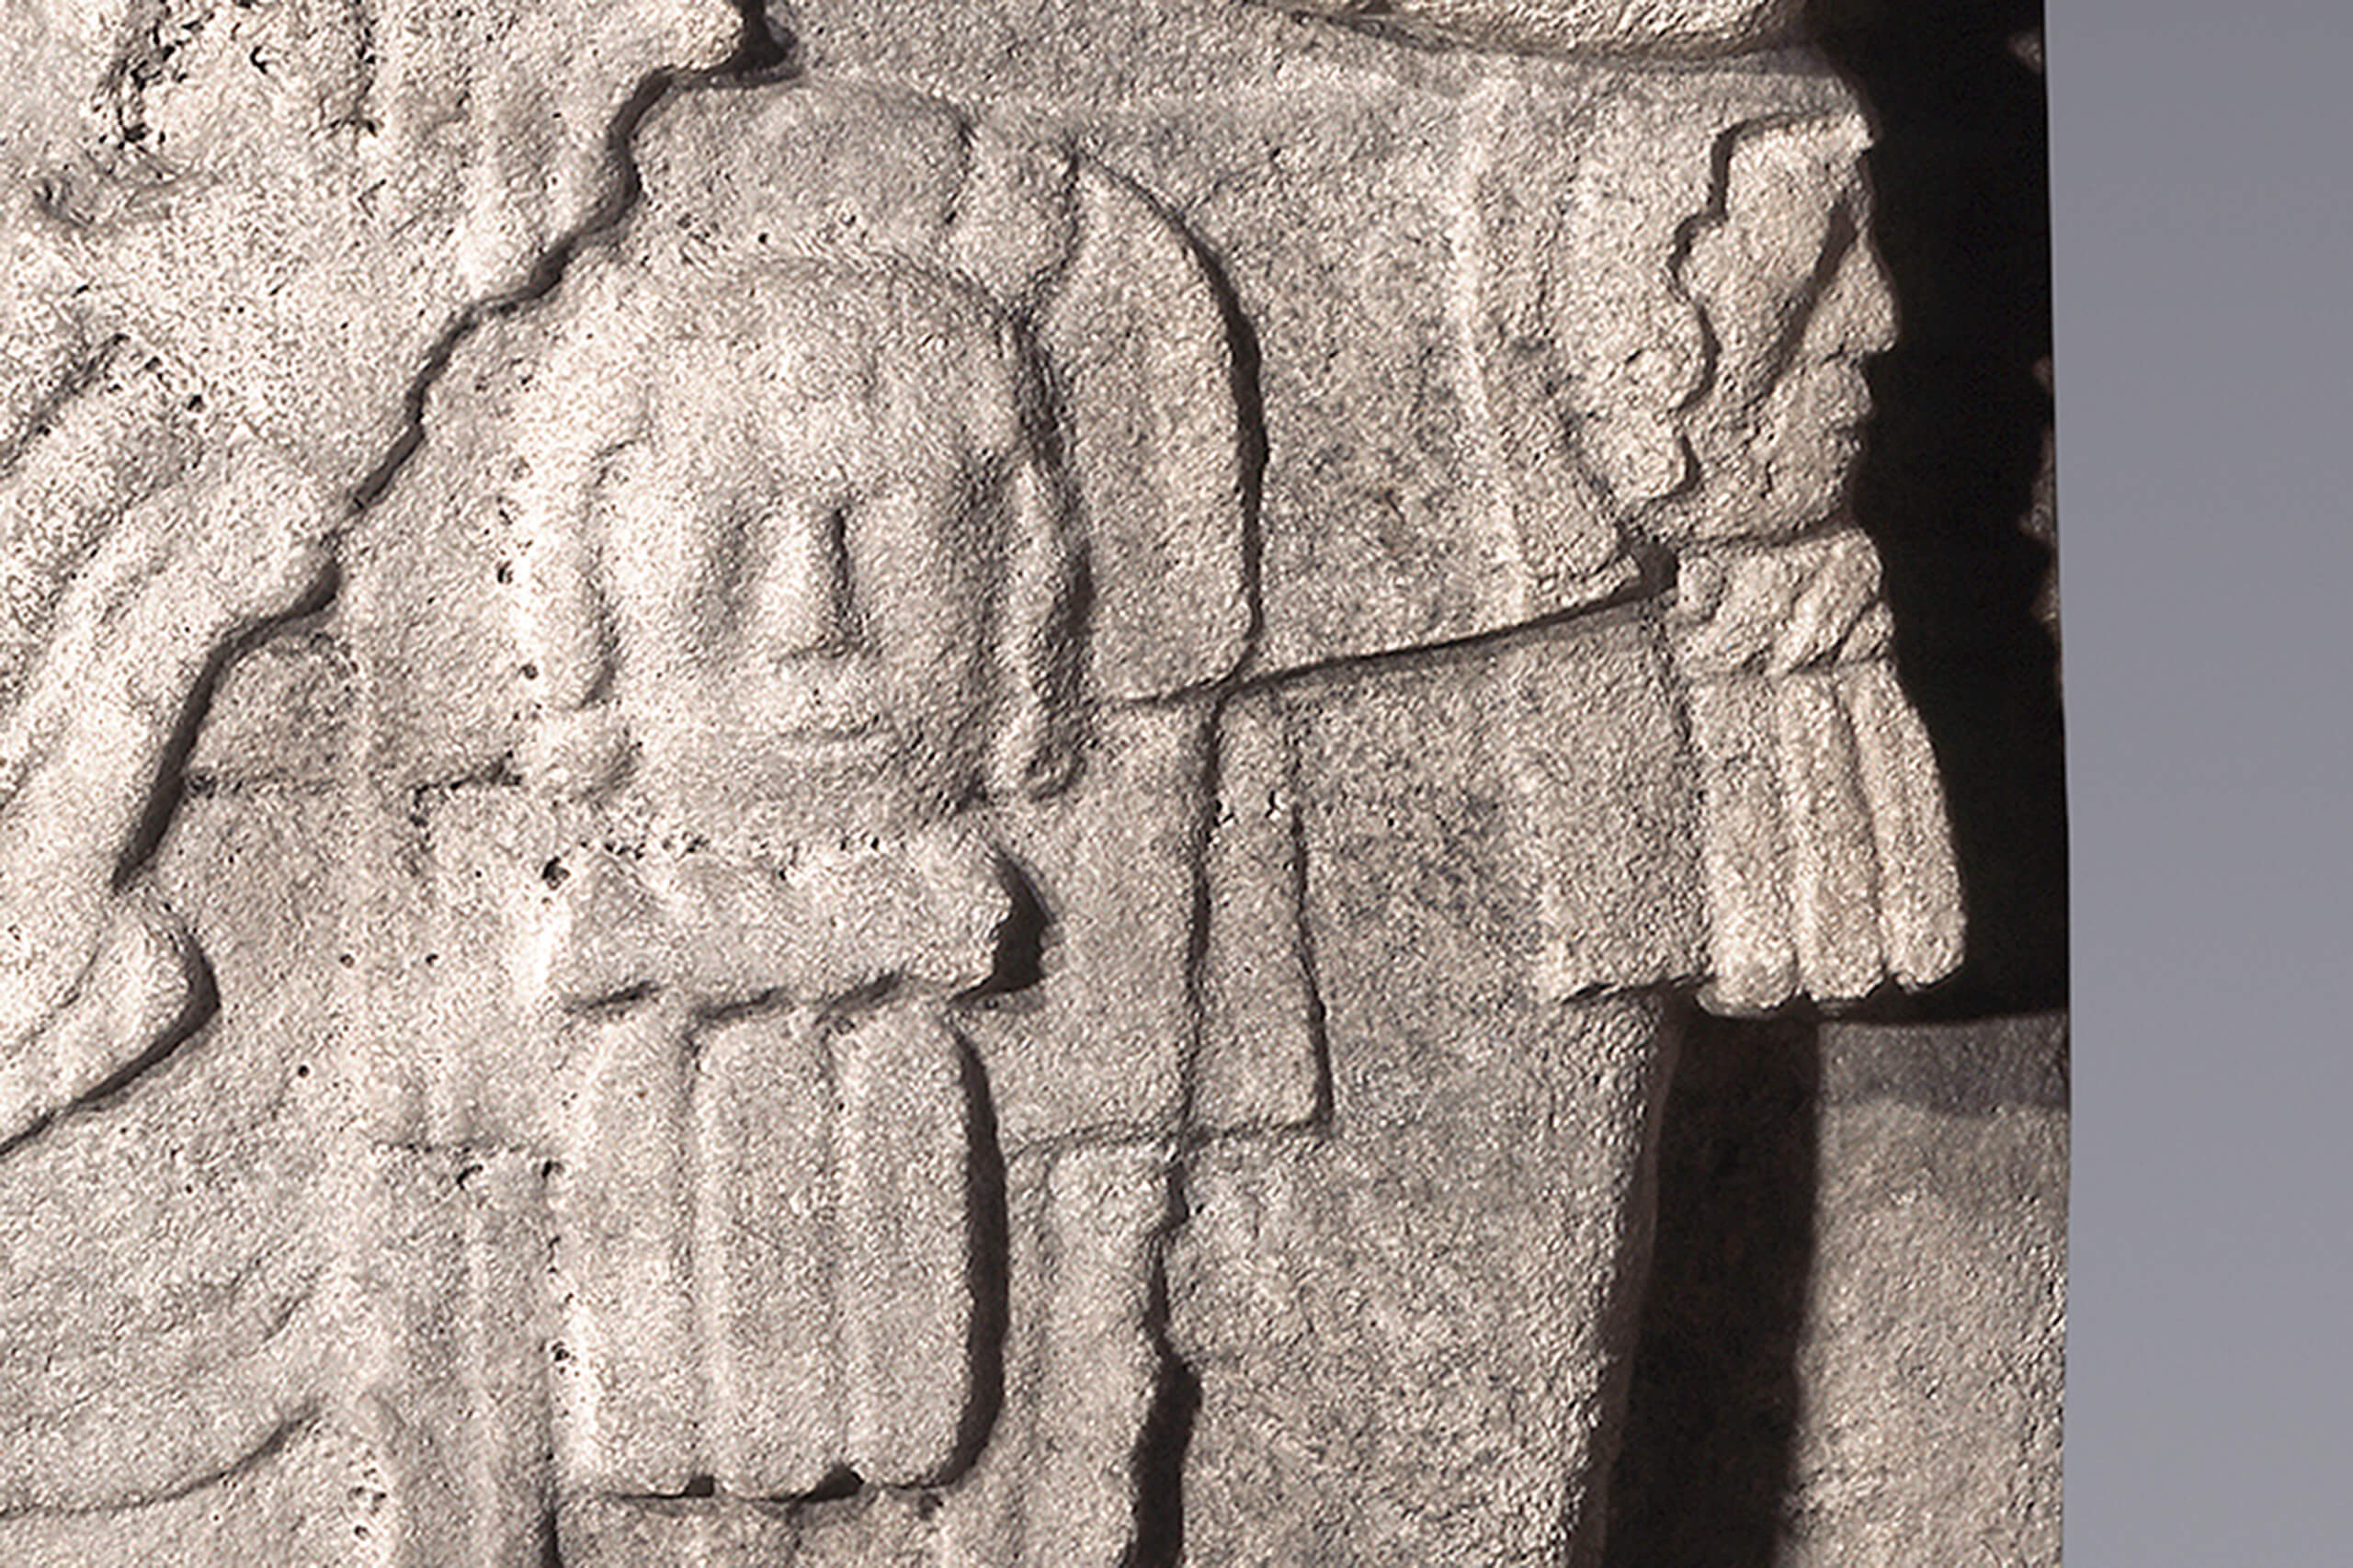 Estela con gobernante en posición frontal | El México antiguo. Salas de Arte Prehispánico | Museo Amparo, Puebla